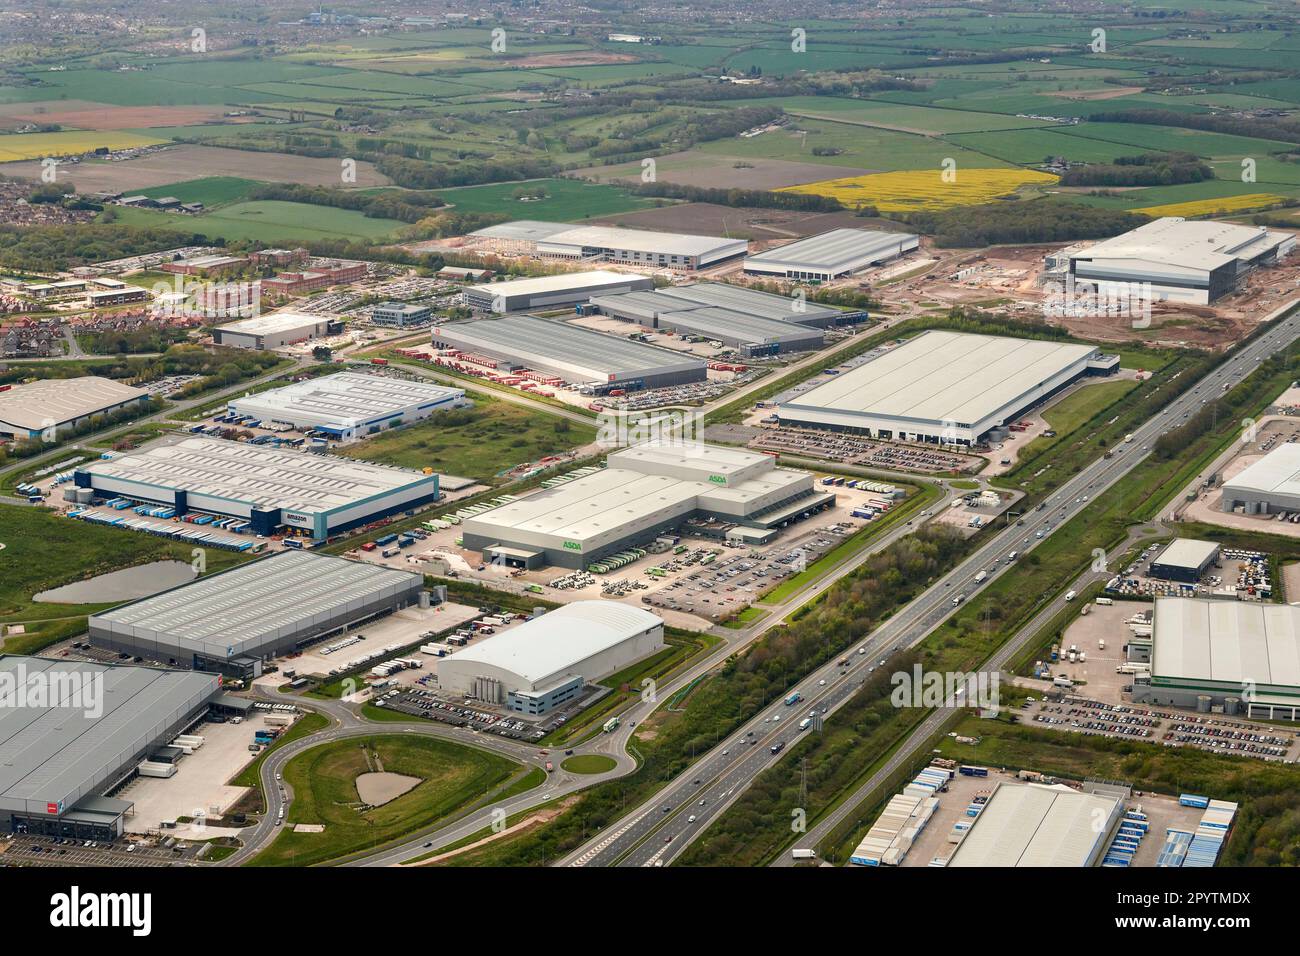 Vue aérienne des nouveaux entrepôts de distribution de détail adjacents à l'autoroute M6, à Warrington, au nord-ouest de l'Angleterre, au Royaume-Uni Banque D'Images